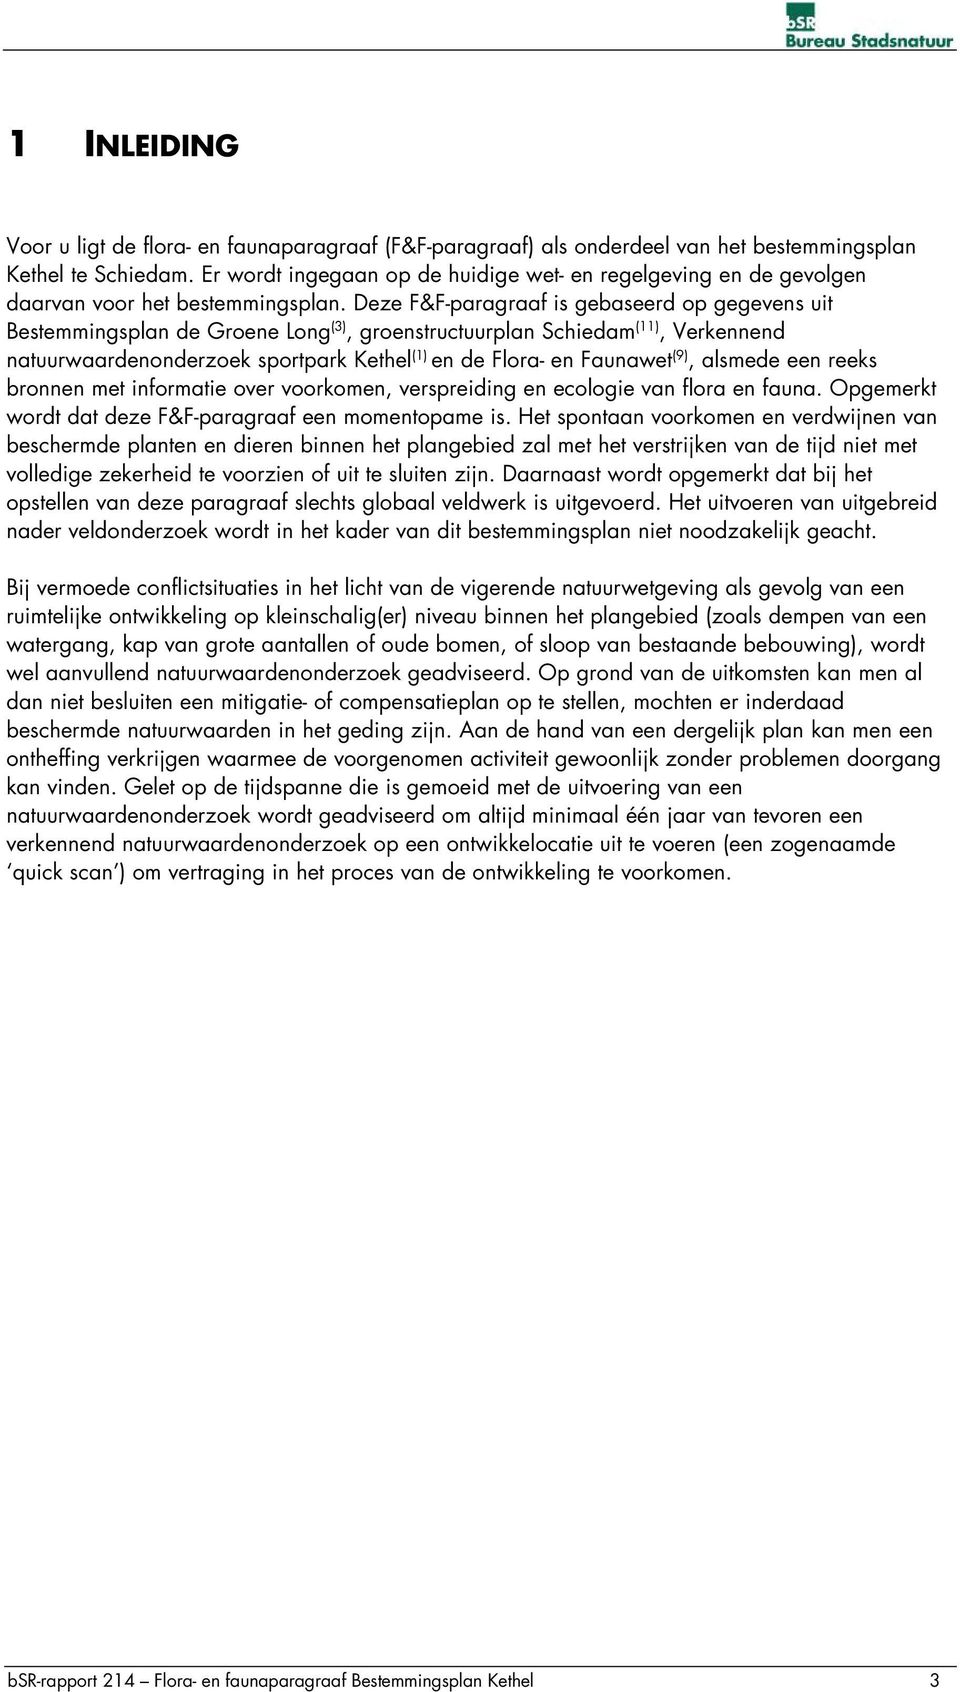 Deze F&F-paragraaf is gebaseerd op gegevens uit Bestemmingsplan de Groene Long (3), groenstructuurplan Schiedam (11), Verkennend natuurwaardenonderzoek sportpark Kethel (1) en de Flora- en Faunawet